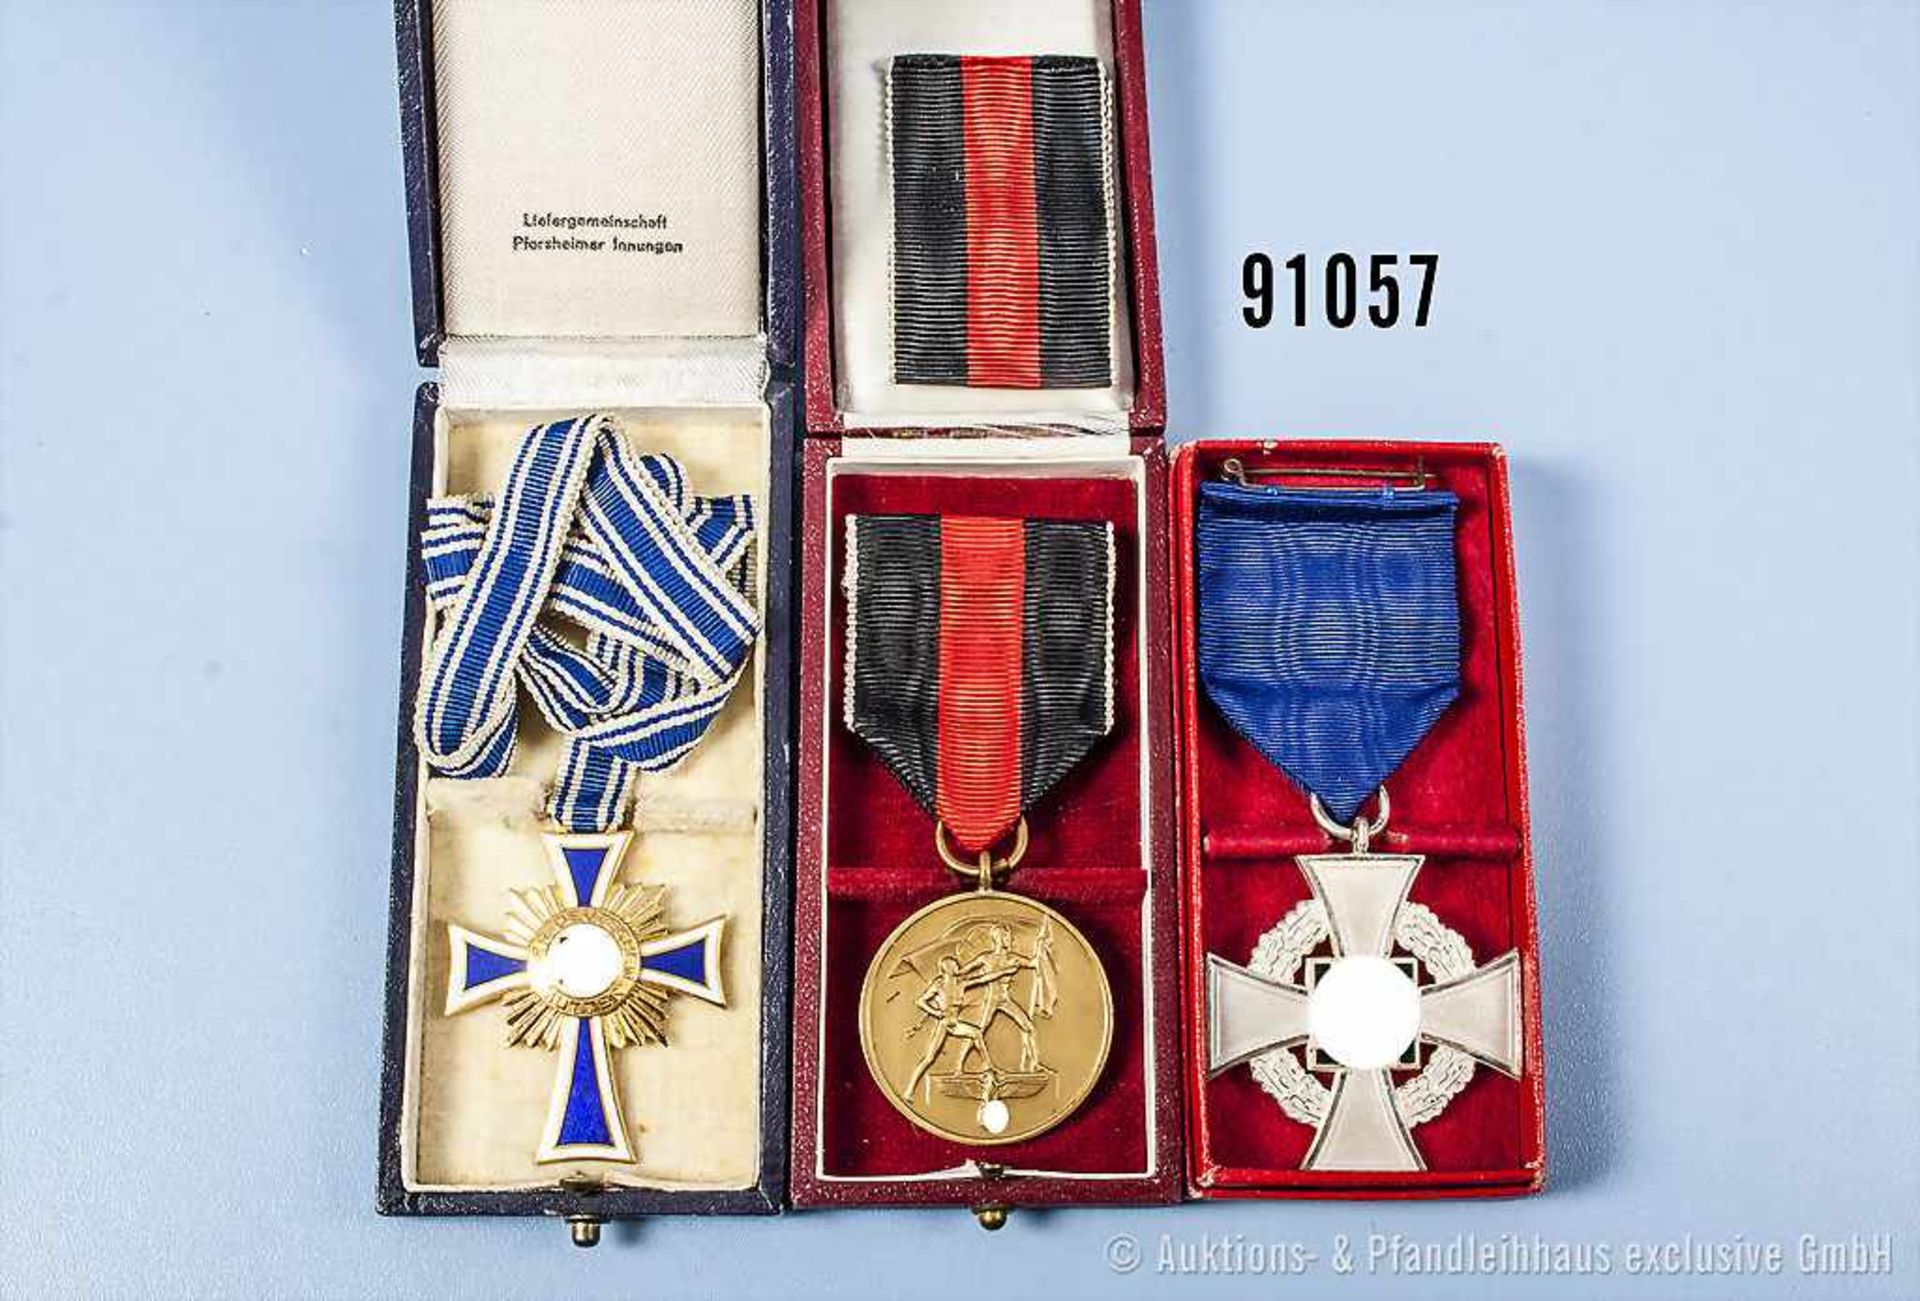 Konv. Sudetenlandmedaille mit Spange Prager Burg, Mutterkreuz in Gold sowie Treuedienst-Ehrenzeichen